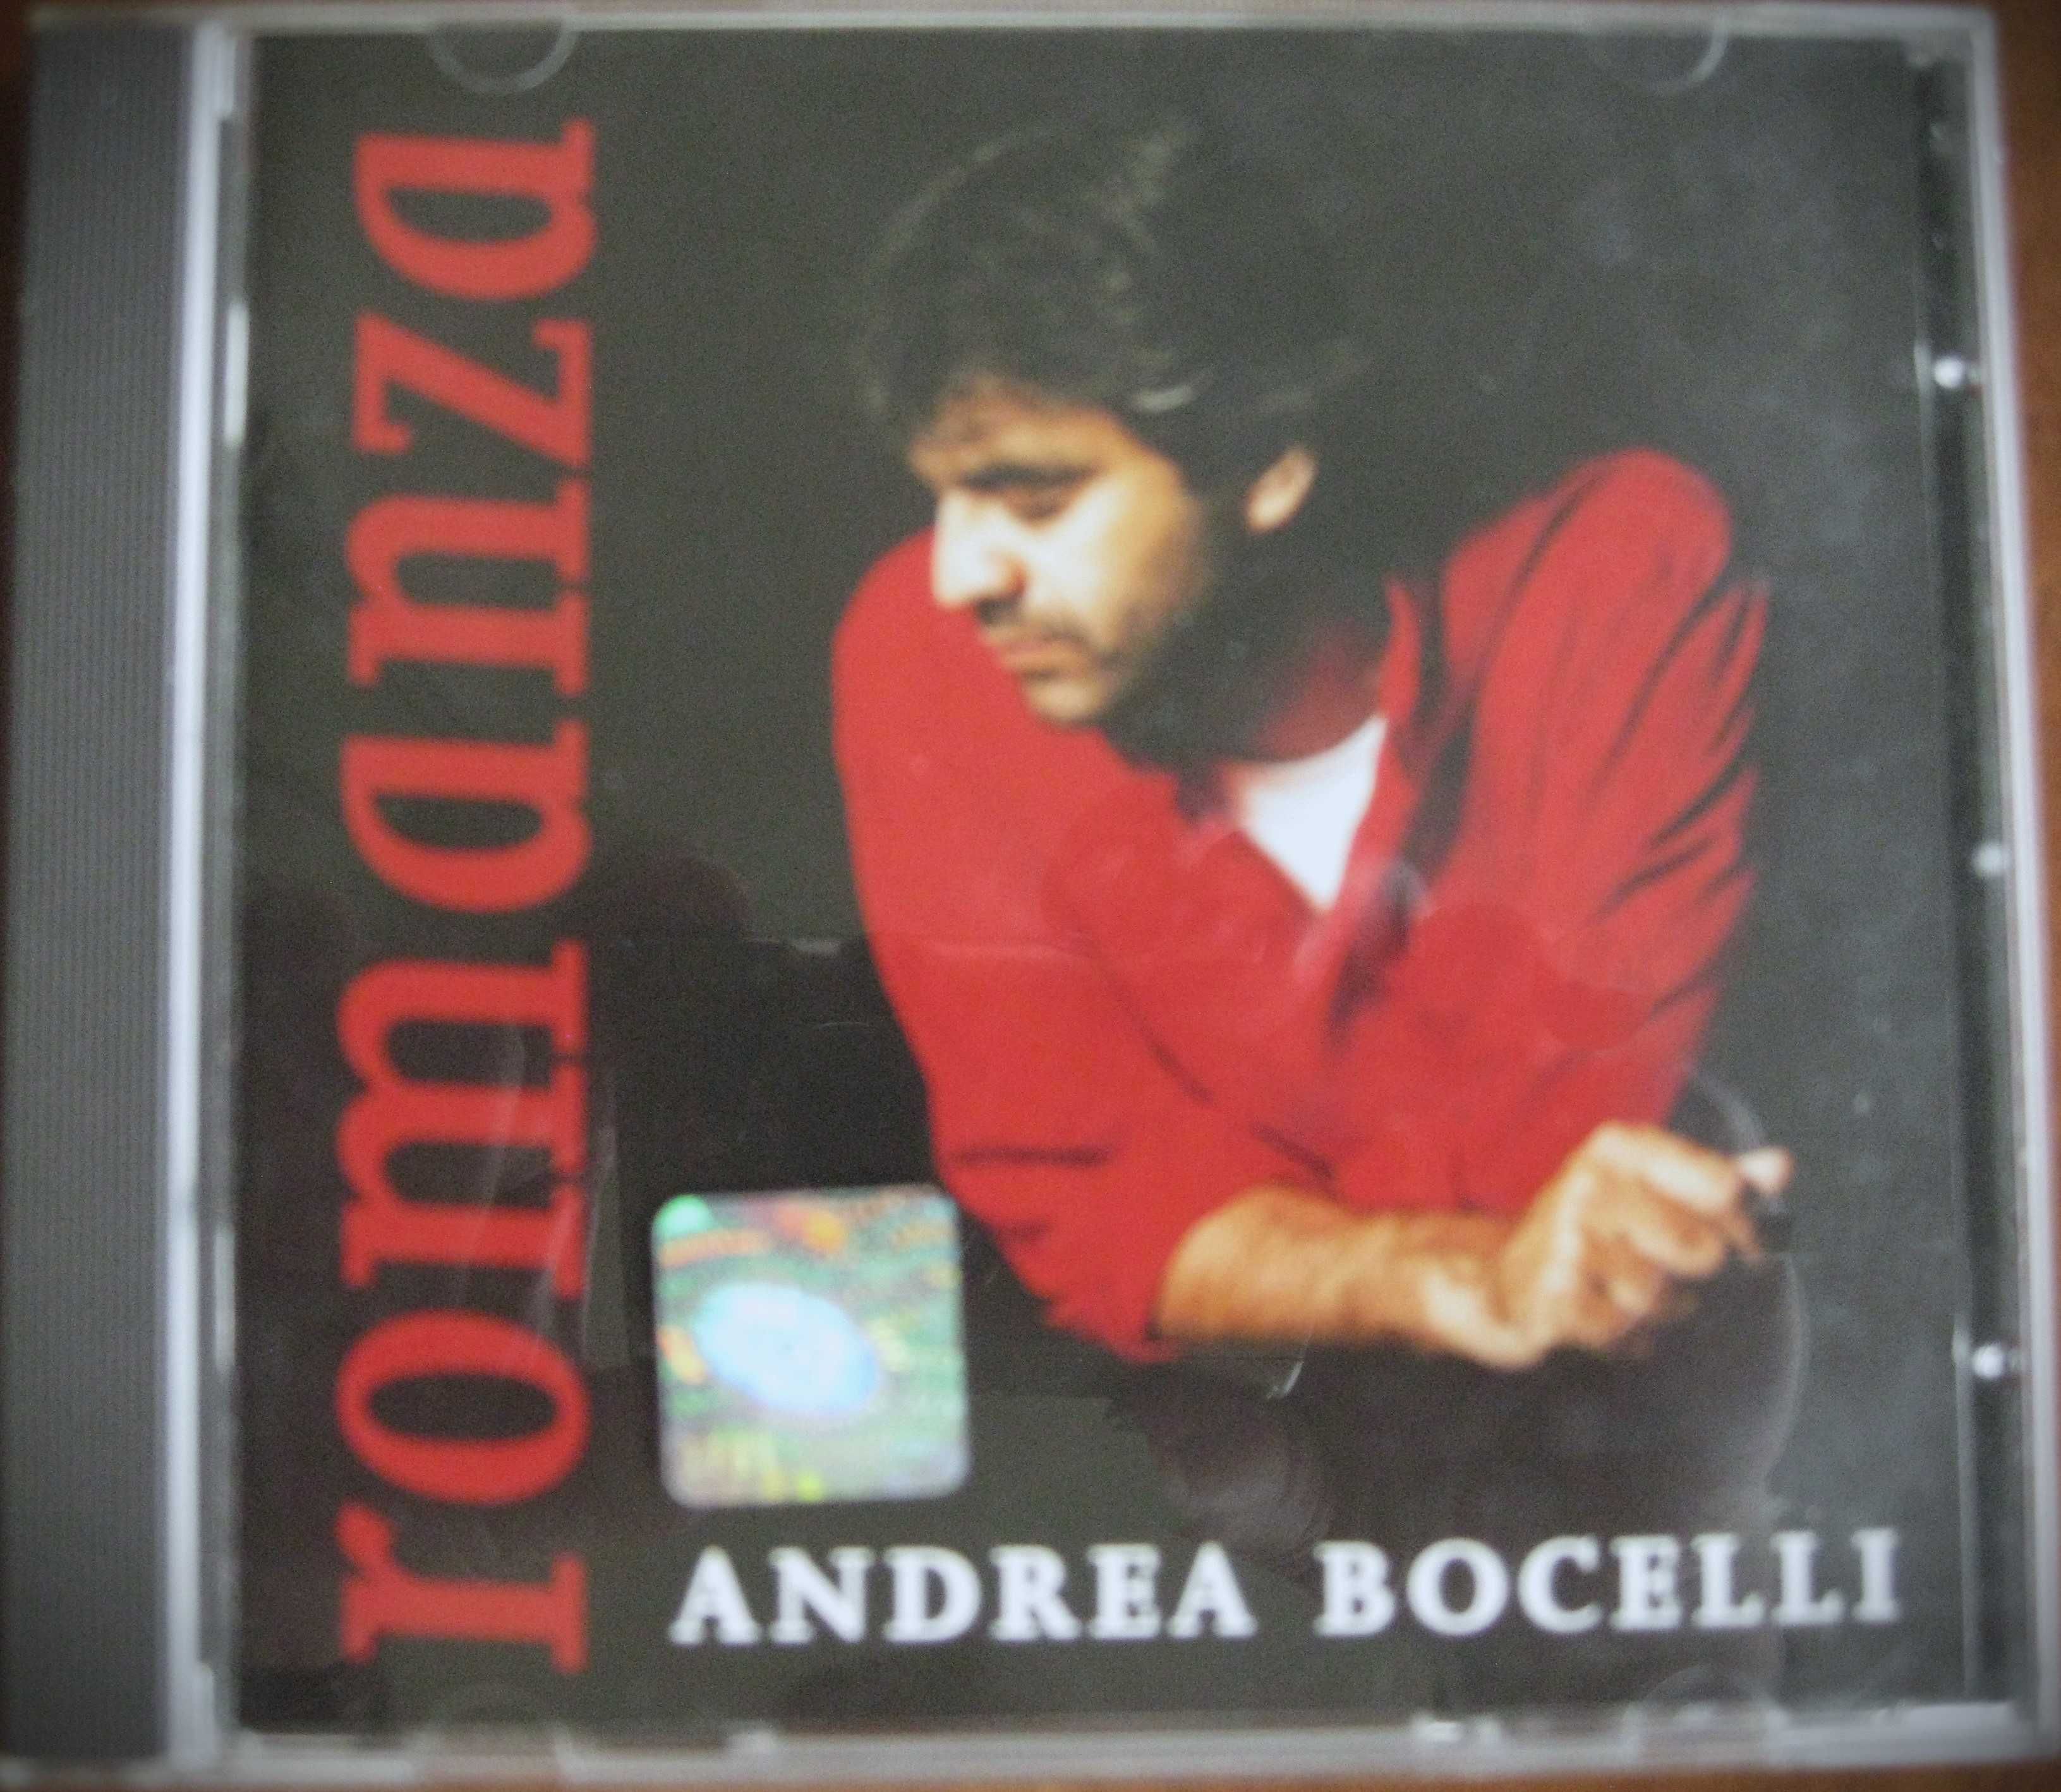 Andrea Bocelli: "Celi di Toscana", "Sogno", "Romanza" - 3 CD za 60 zł